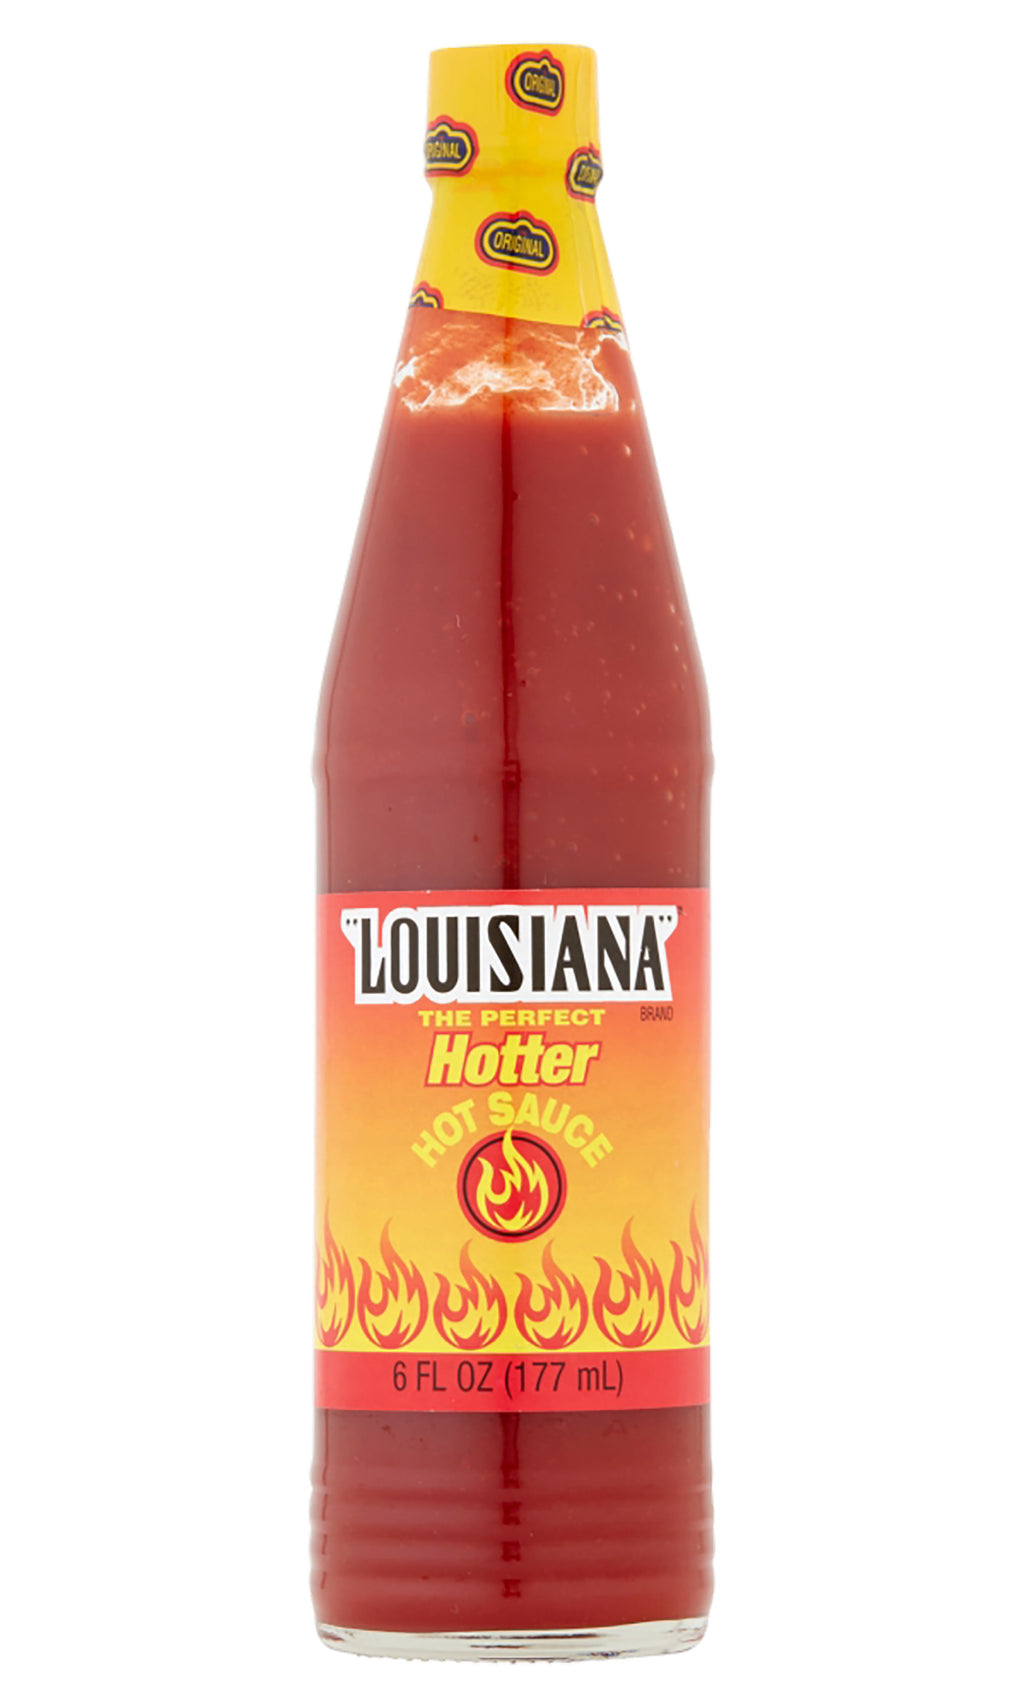 The Original Louisiana Brand Hot Sauce – Atlanta Grill Company